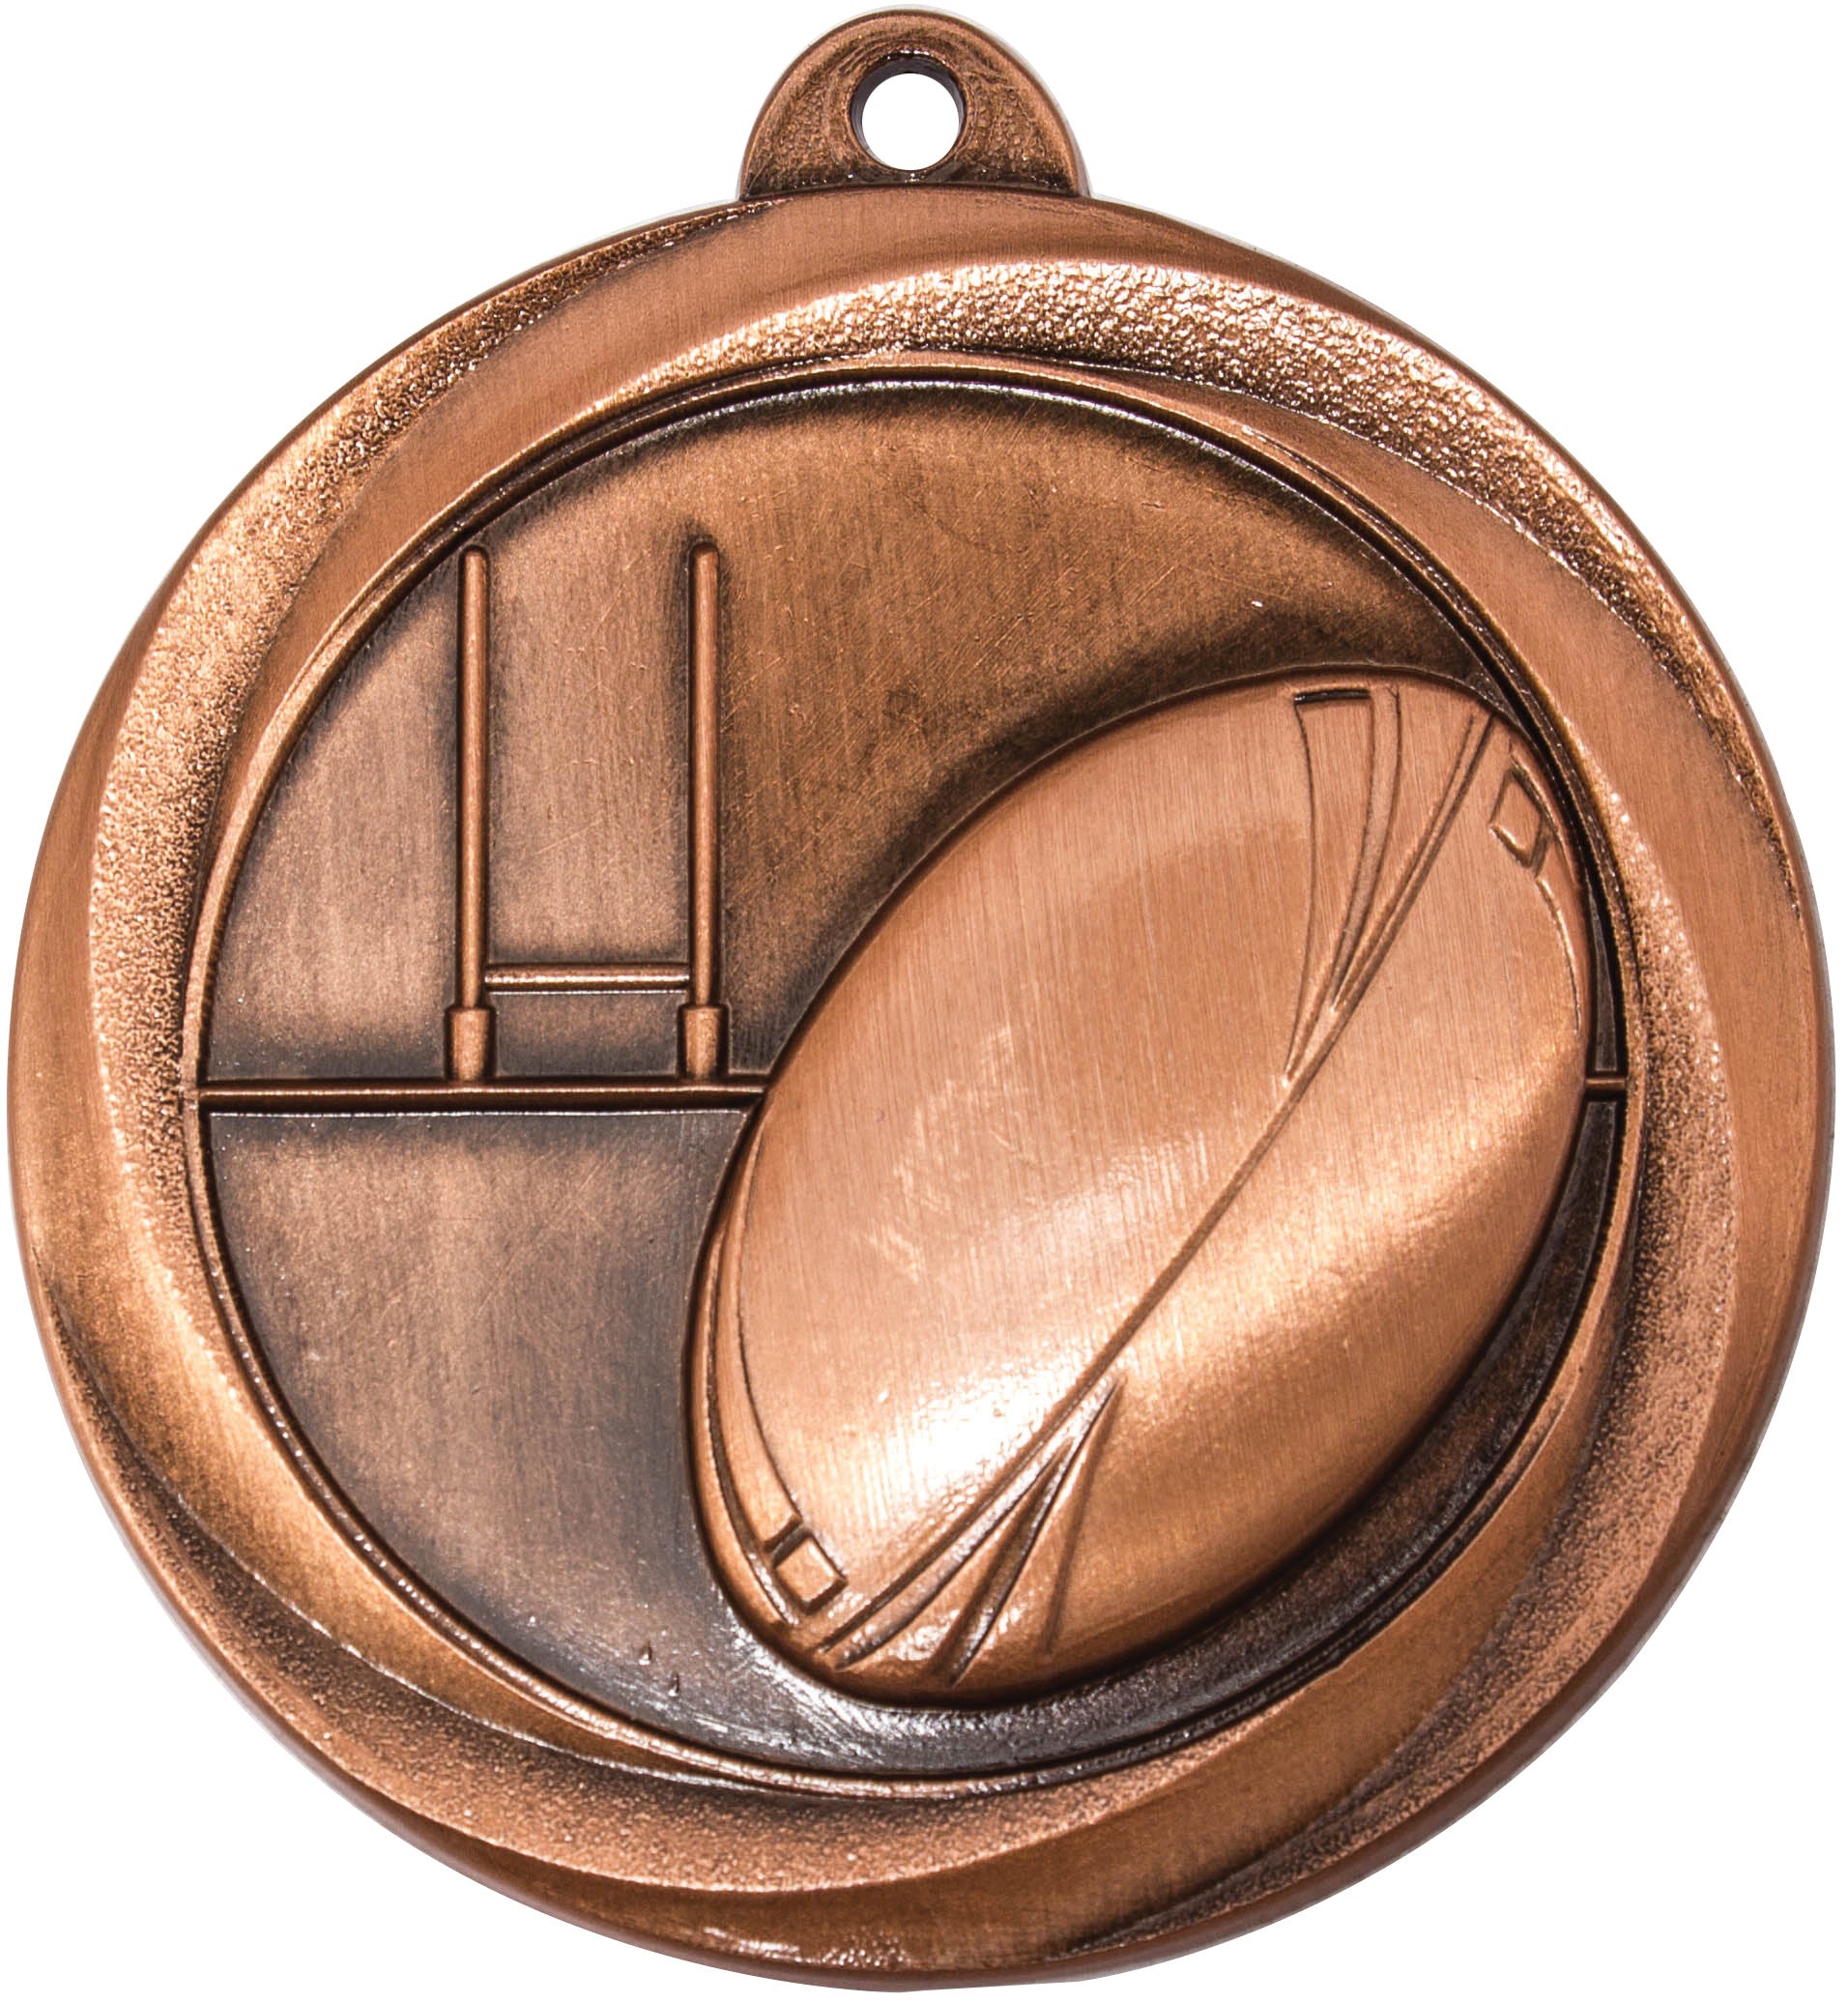 ME913 Rugby Medal